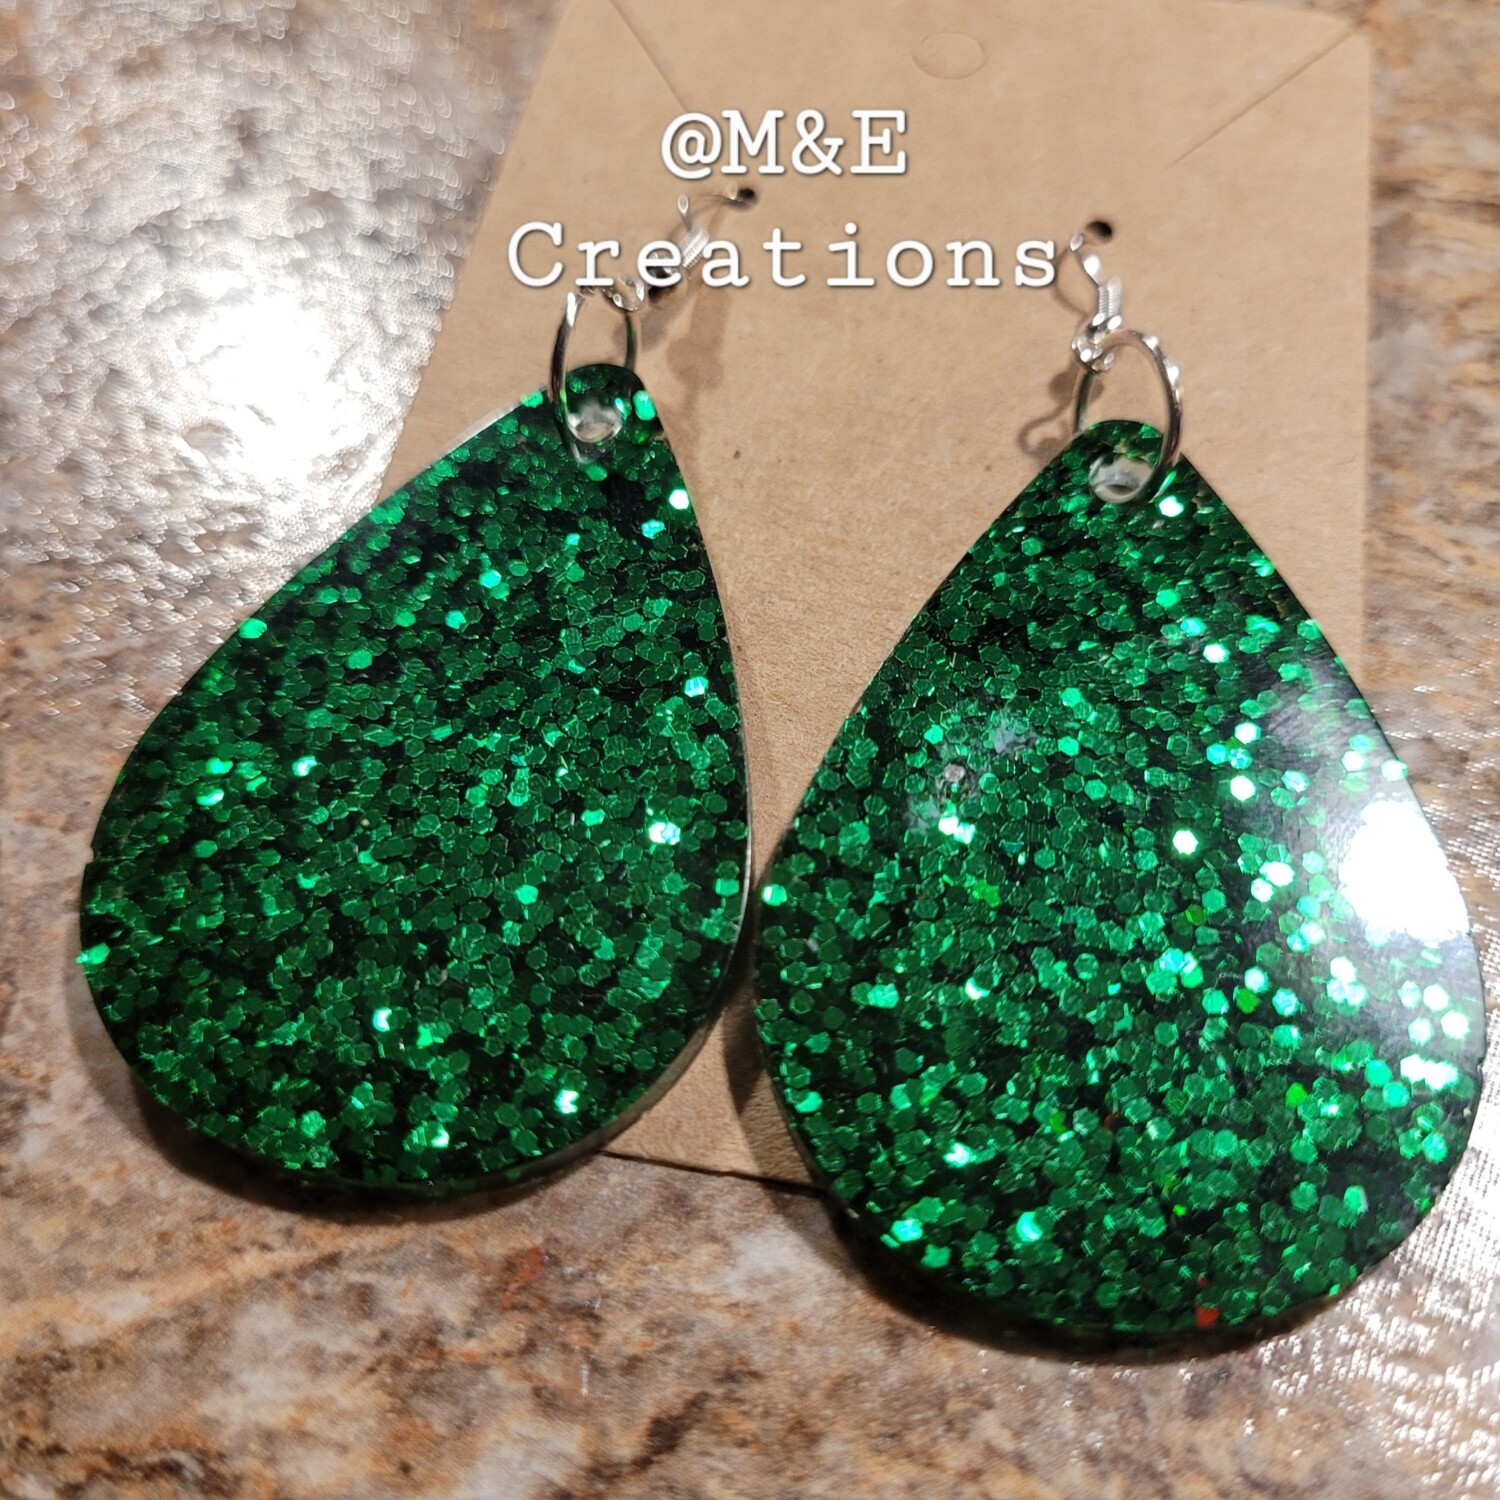 M&E Creations resin green glitter earrings